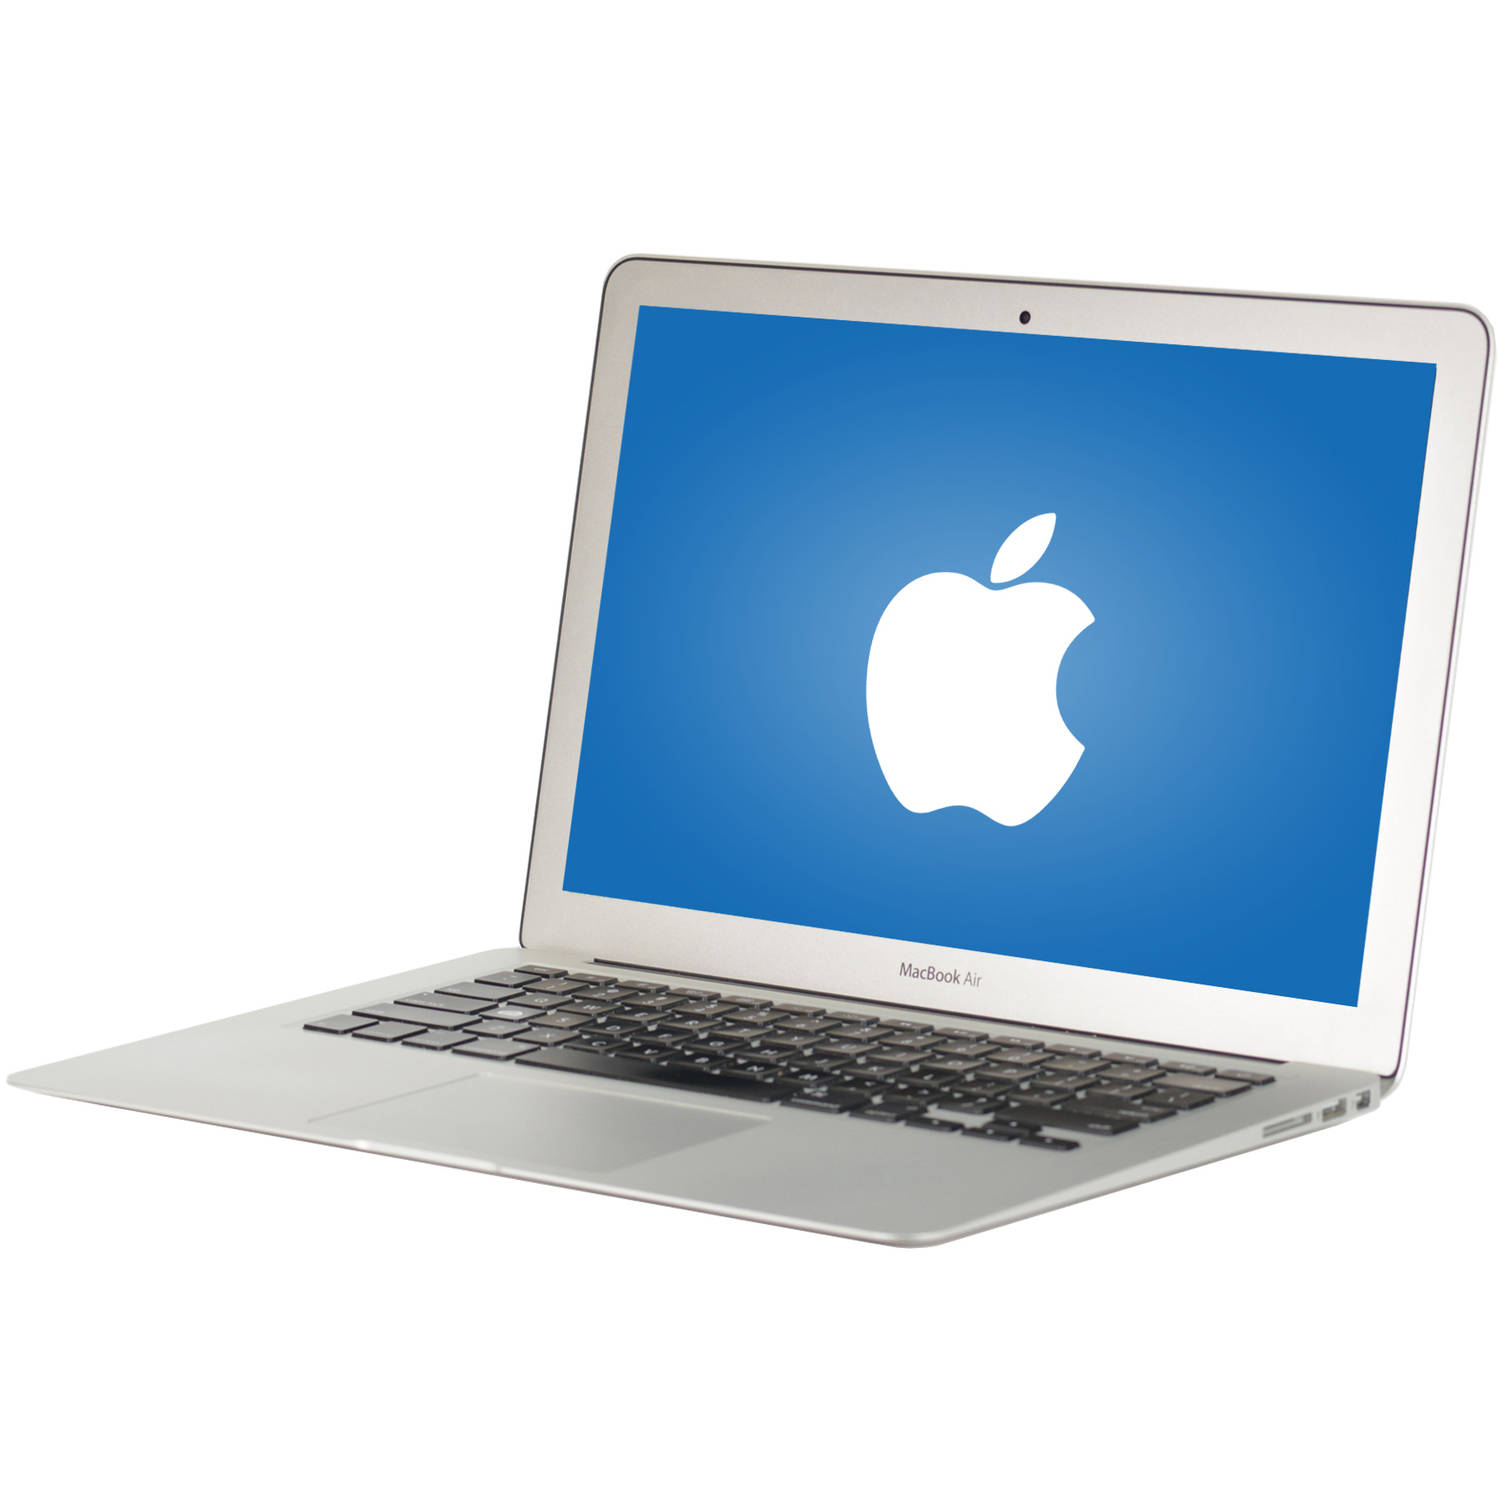 Mac os for macbook air 2015